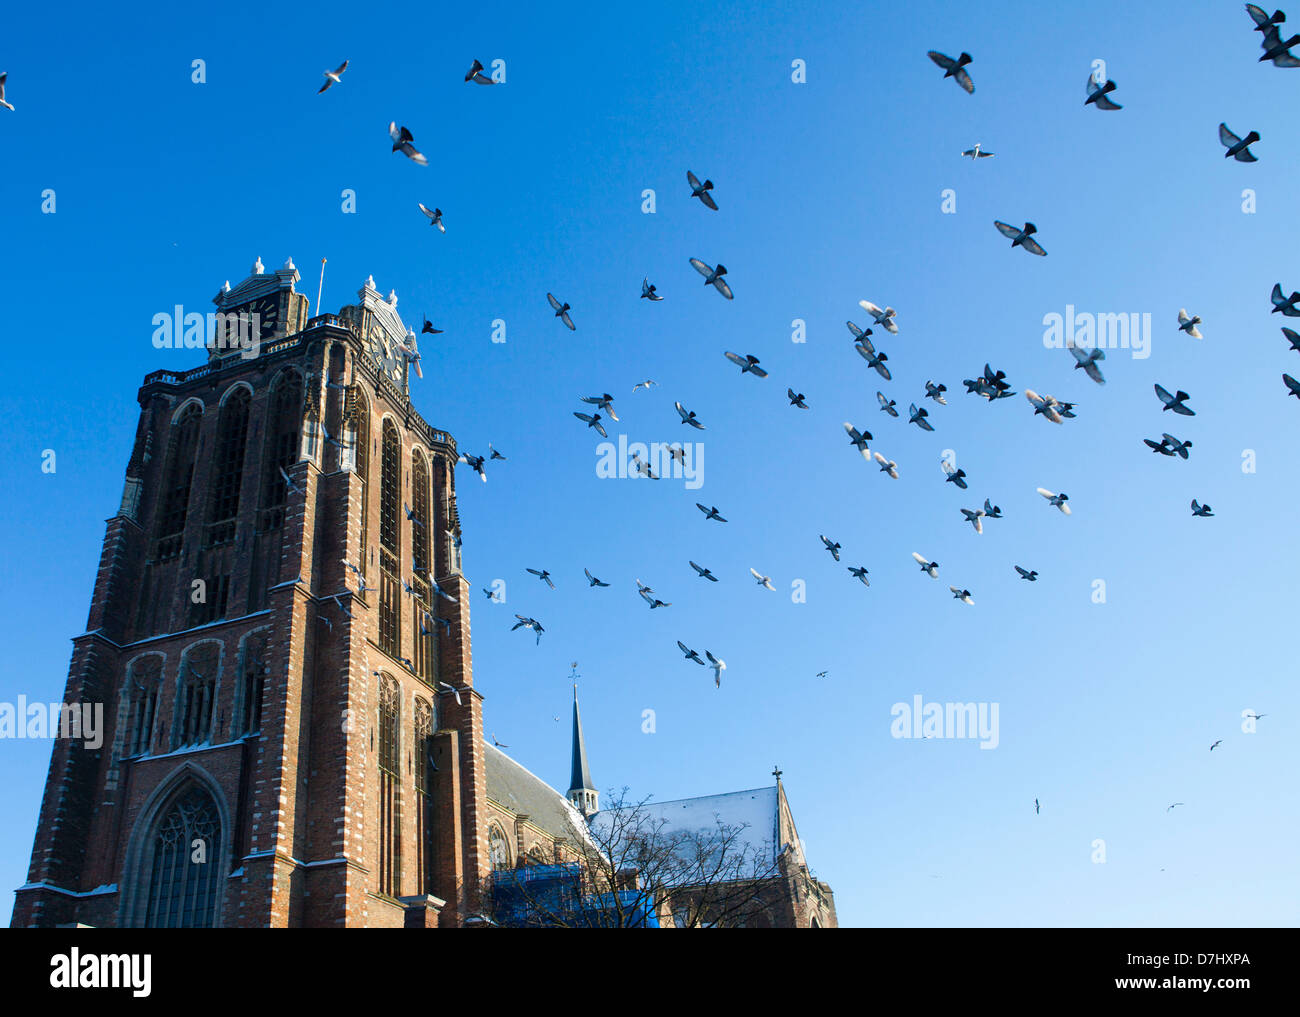 'Grote kerk' (big church) in Dordrecht, Netherlands Stock Photo